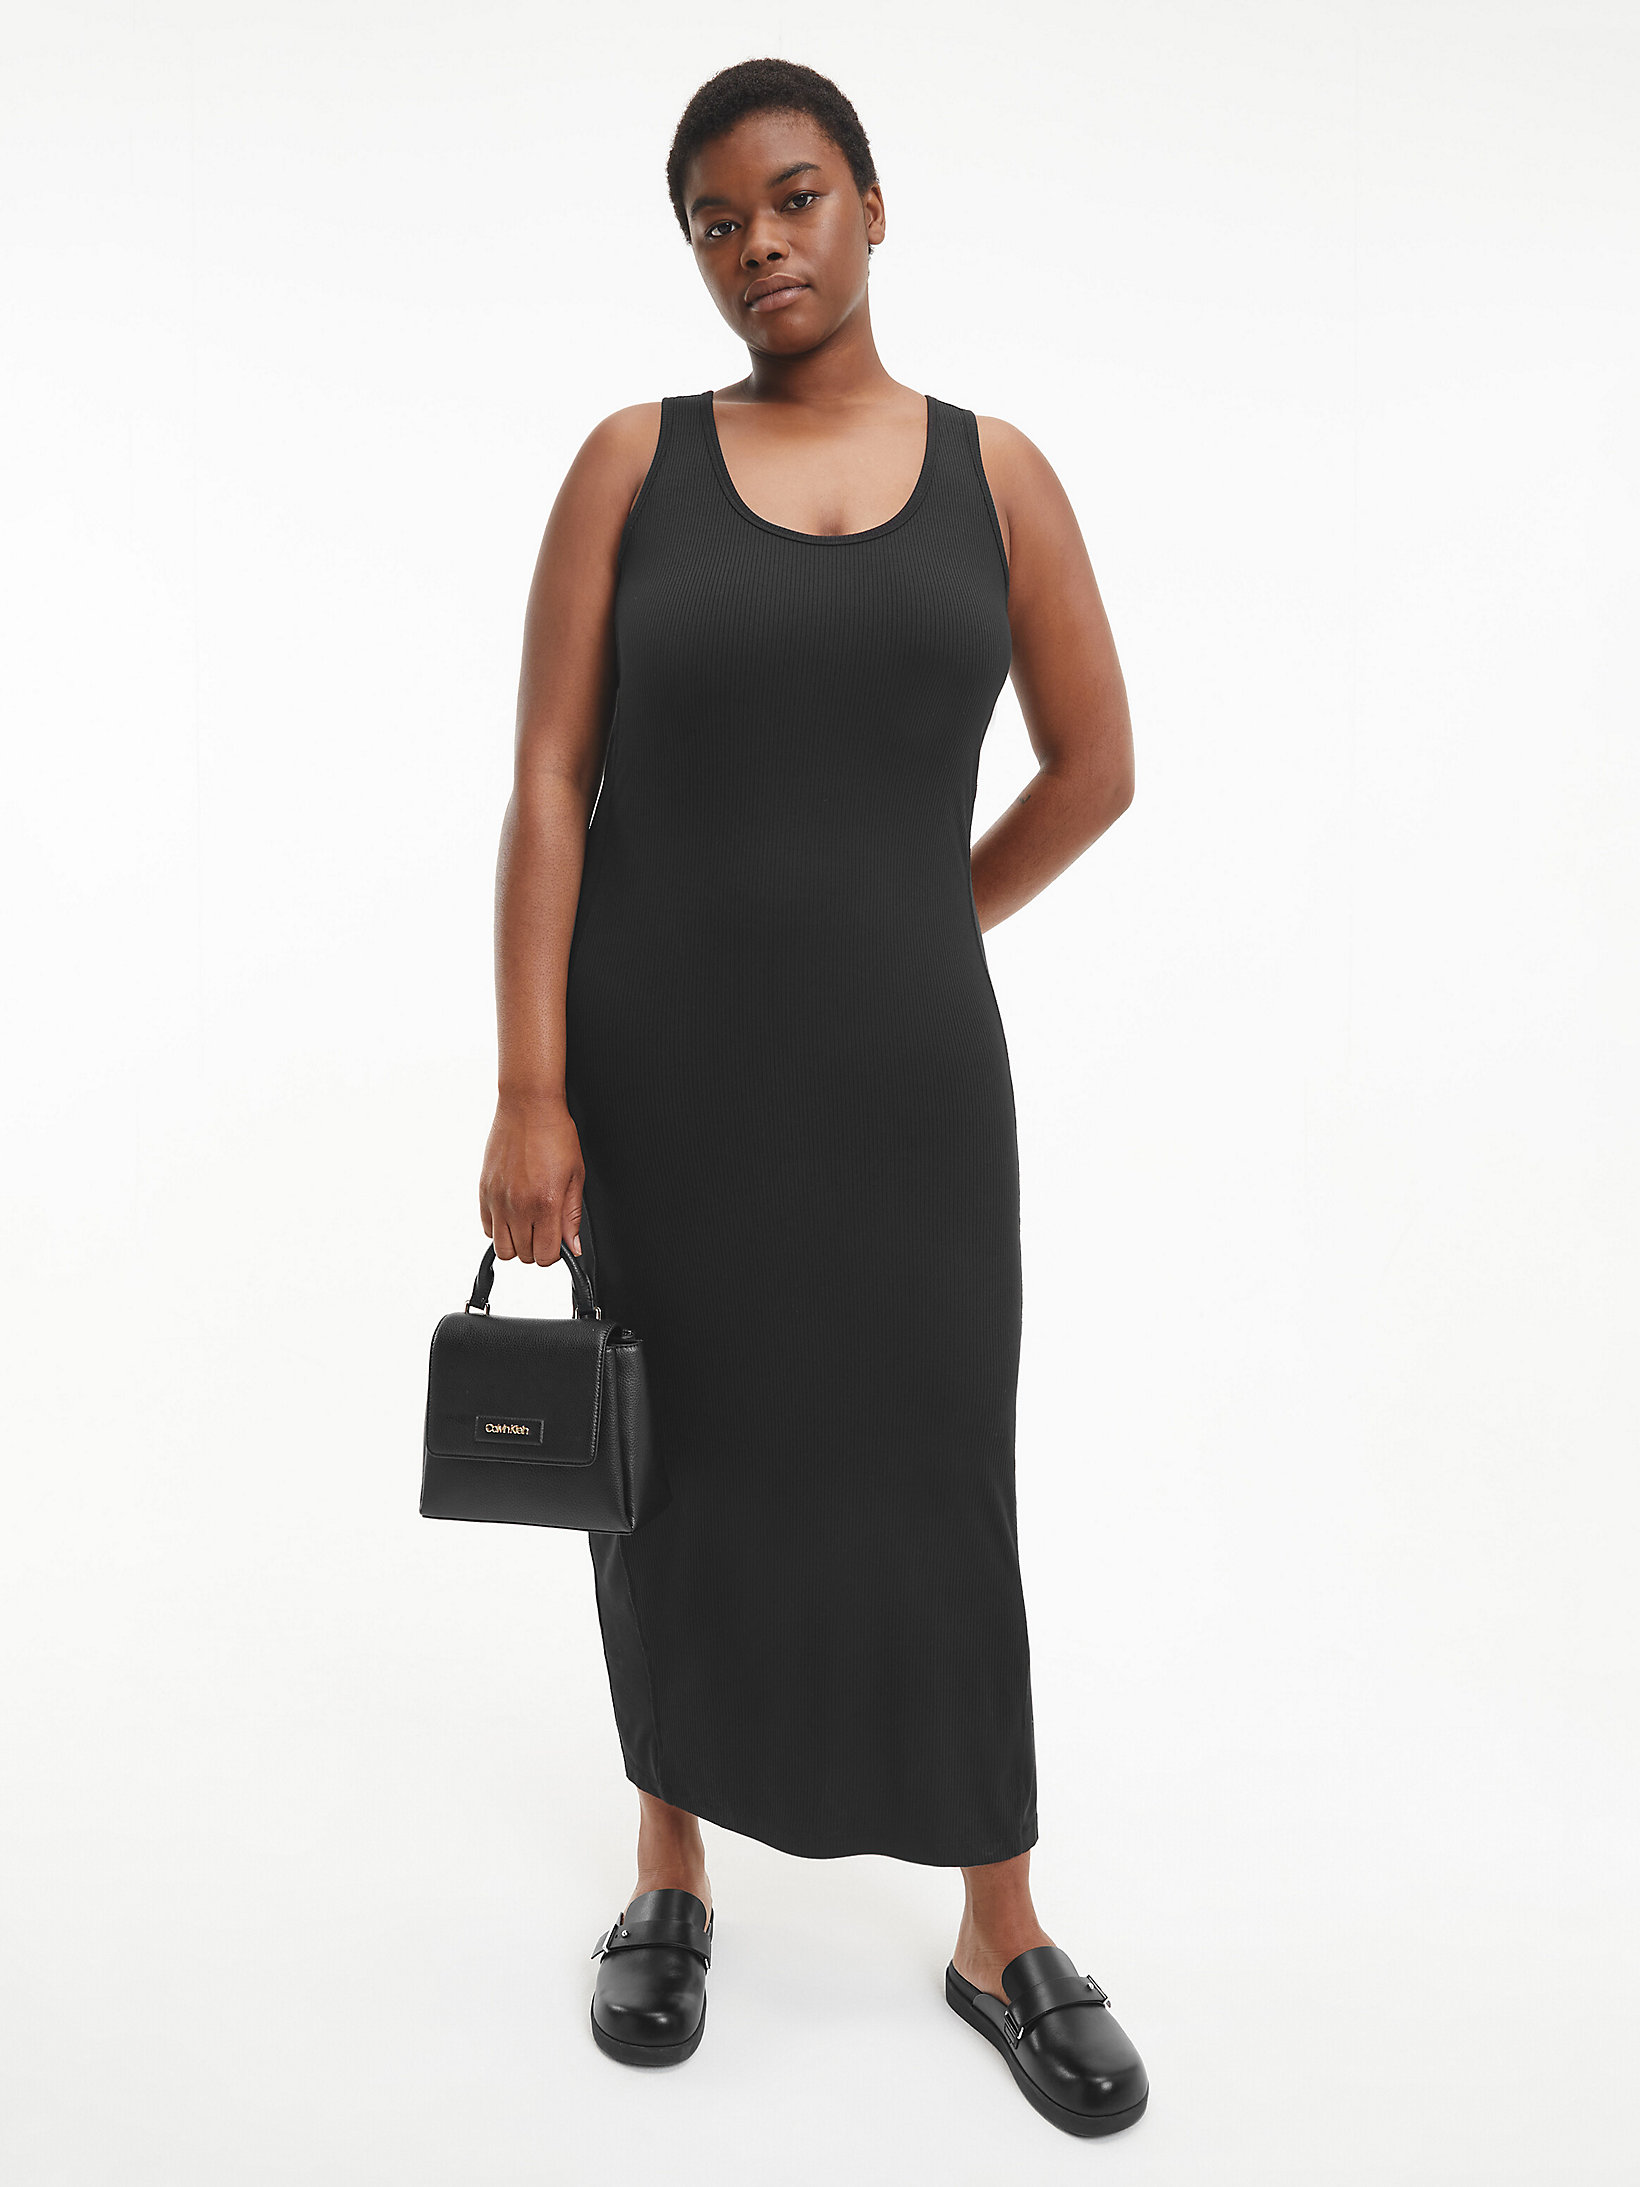 CK Black > Sukienka Bez Rękawów Plus Size Z Dżerseju śCiągaczowego > undefined Kobiety - Calvin Klein